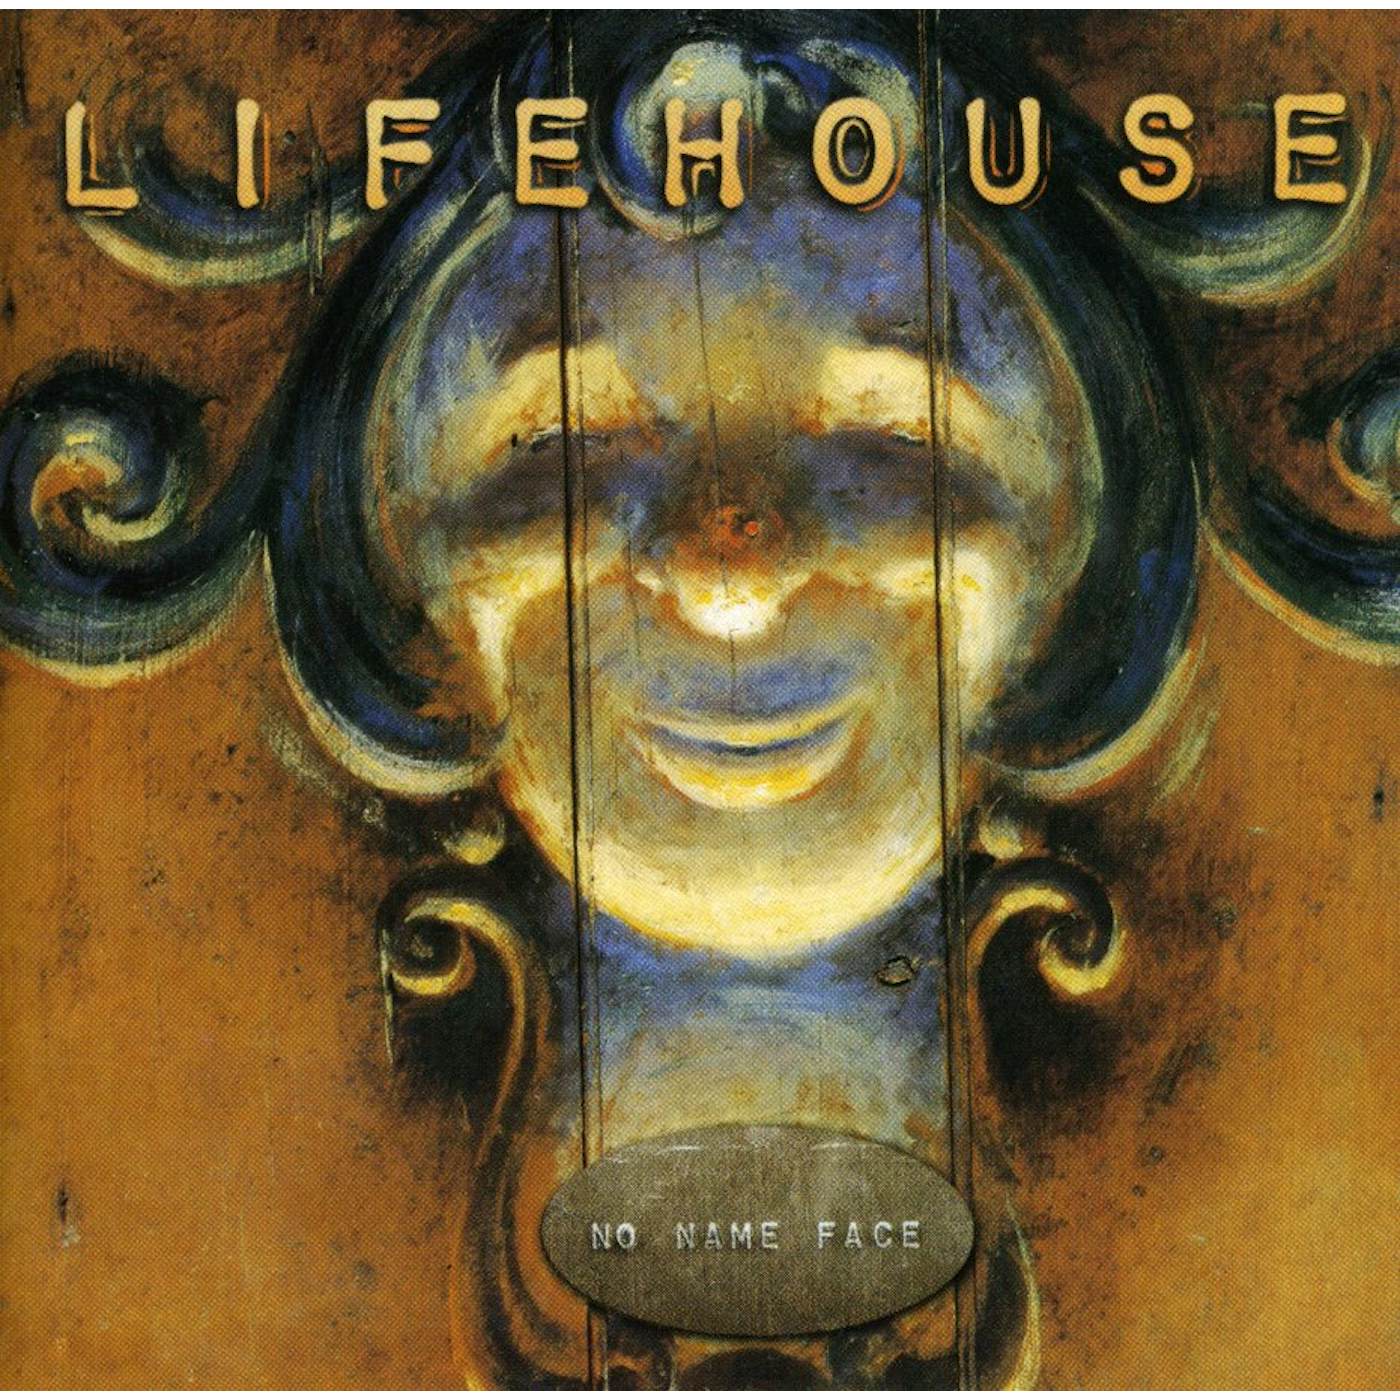 Lifehouse NO NAME FACE CD